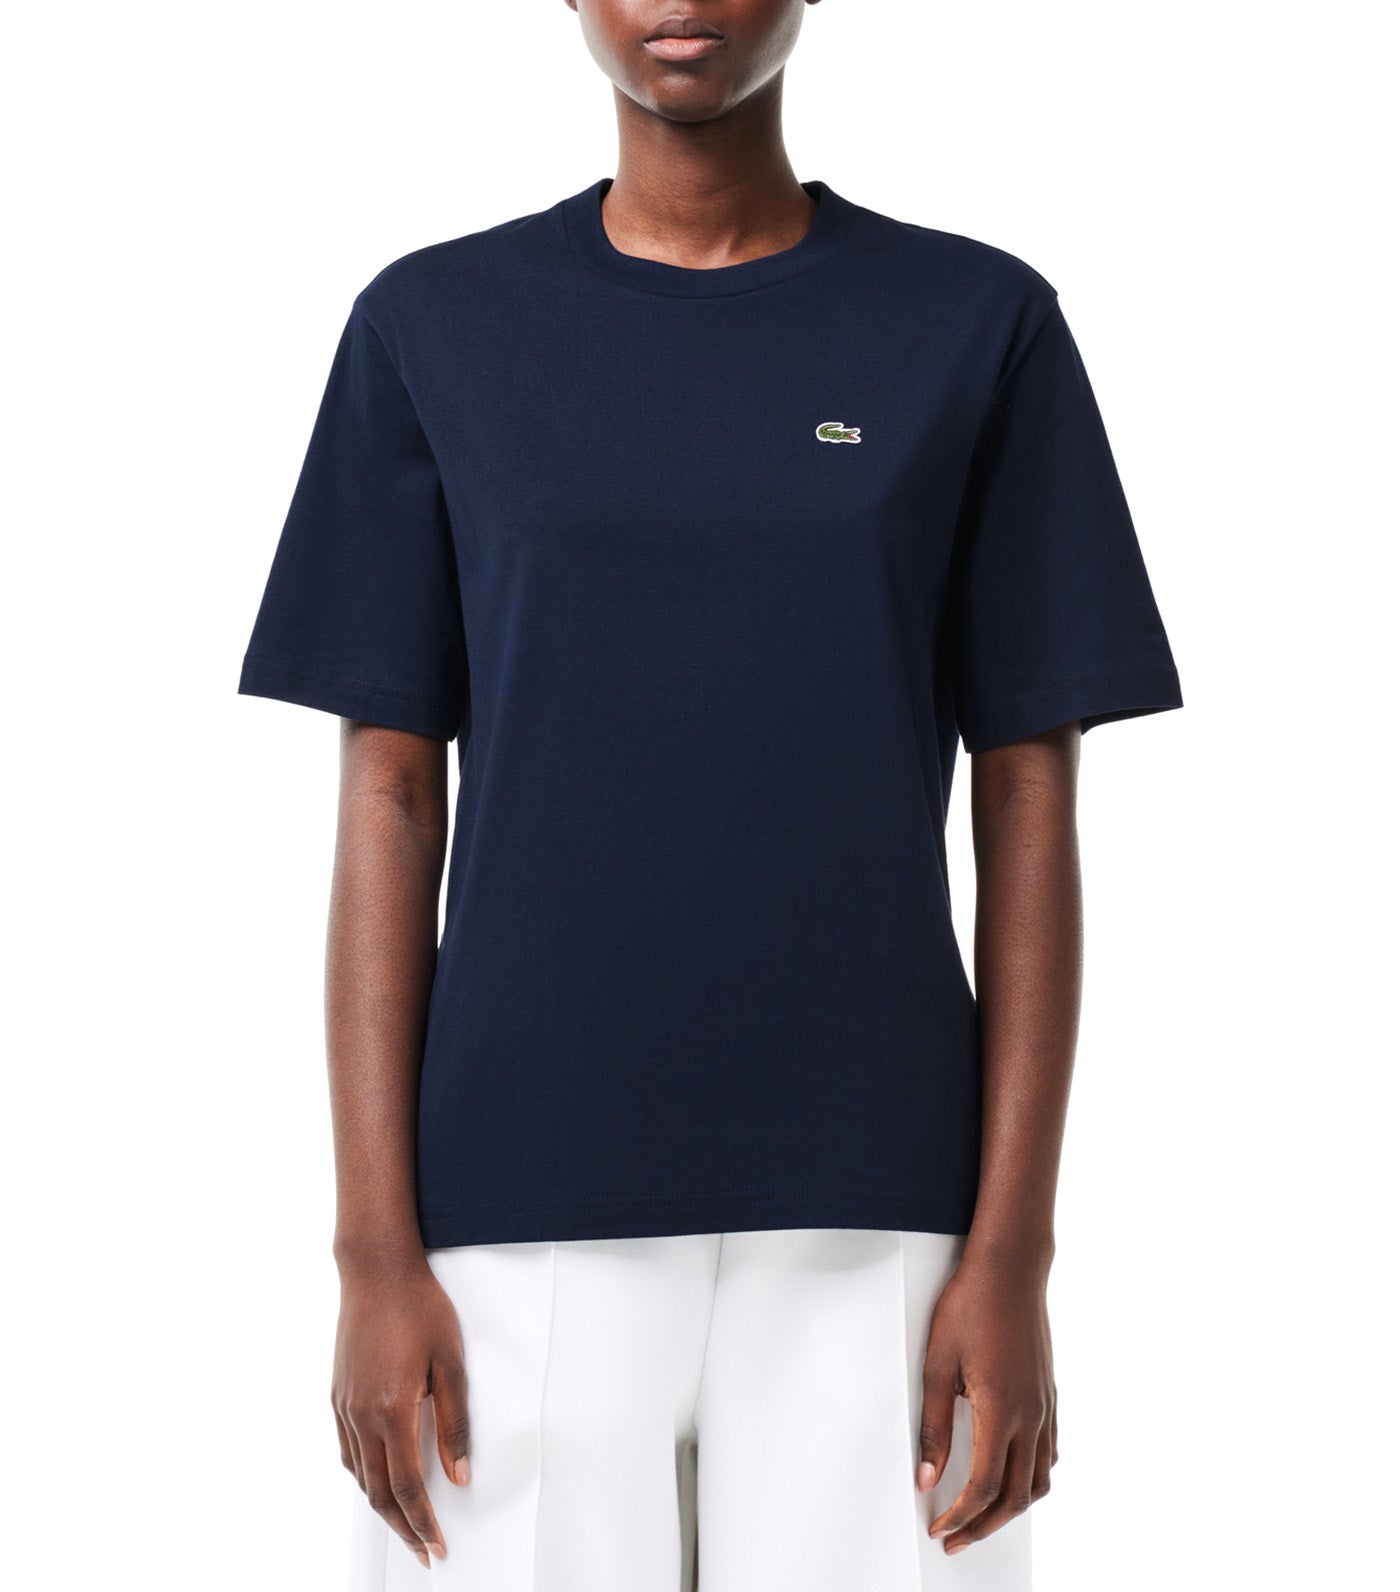 Relaxed Fit Lightweight Cotton Pima Jersey T-Shirt Navy Blue